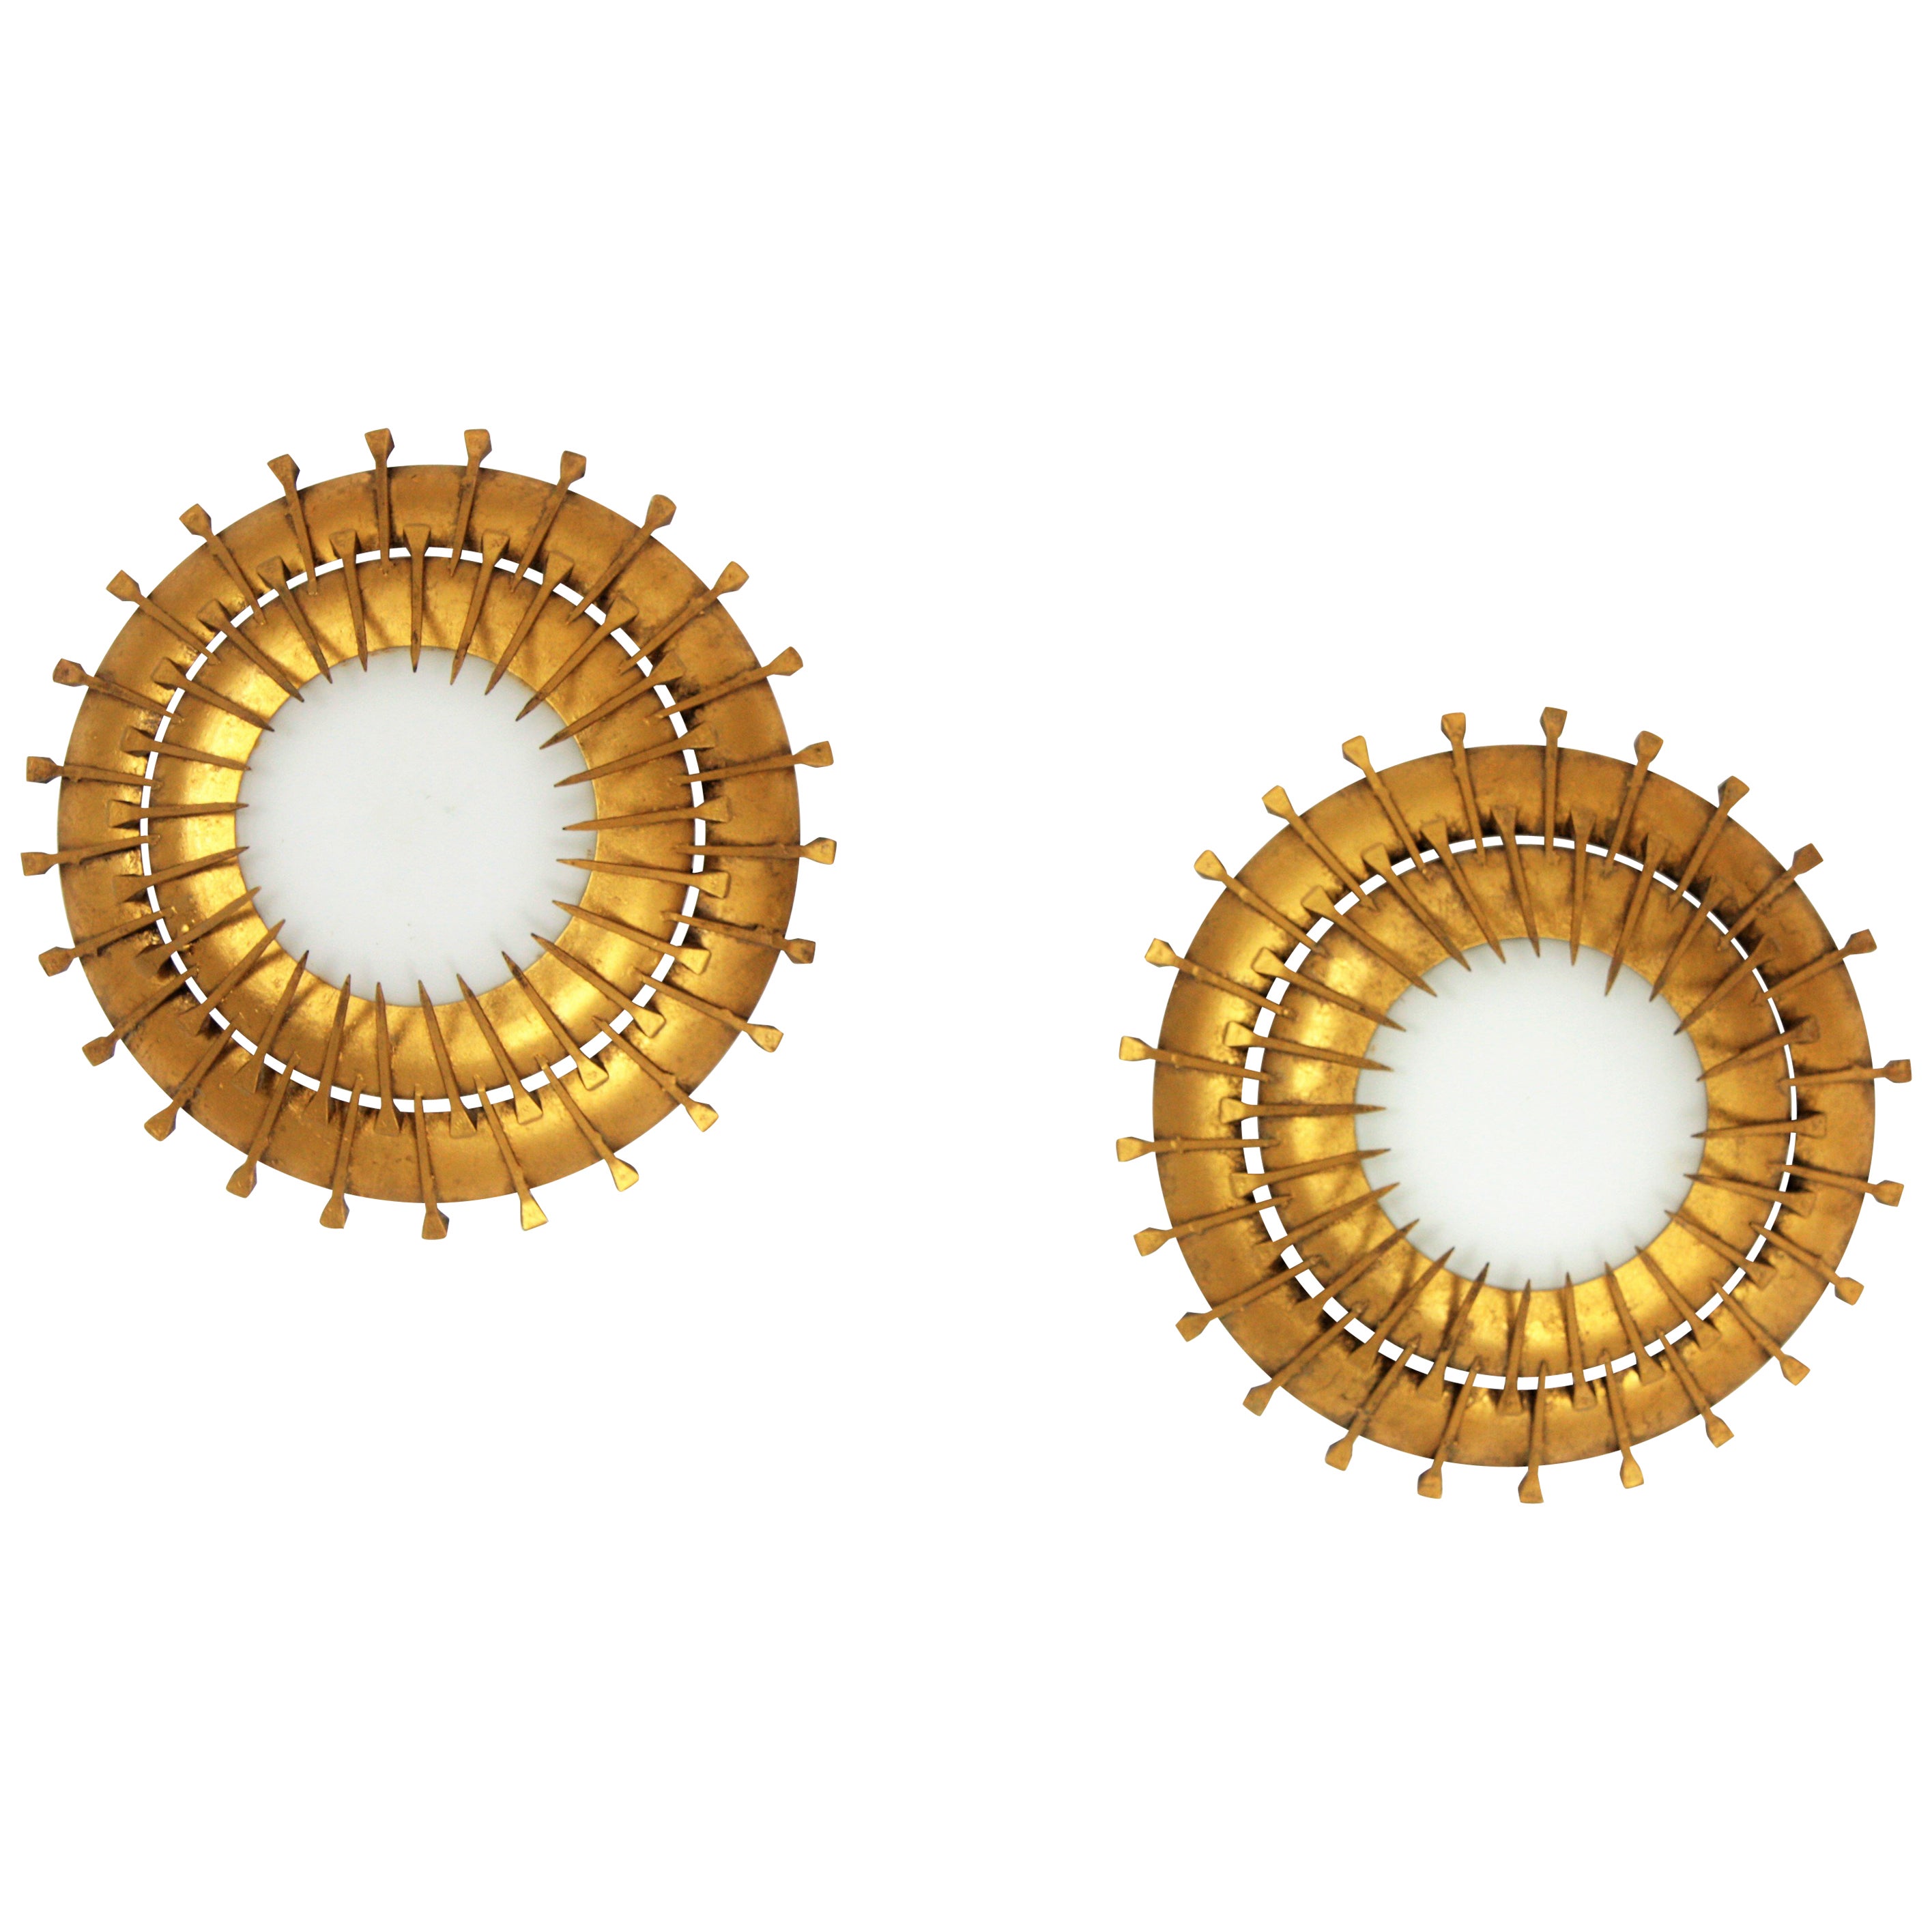 Französische Leuchten mit Sonnenschliff aus den 1940er-1950er Jahren, Milchglas, vergoldetes Eisen
Schöne Einzelstücke, aber auch interessant mit anderen Leuchten gemischt, um eine Deckenkonstellation oder eine Wandkomposition zu schaffen. Diese